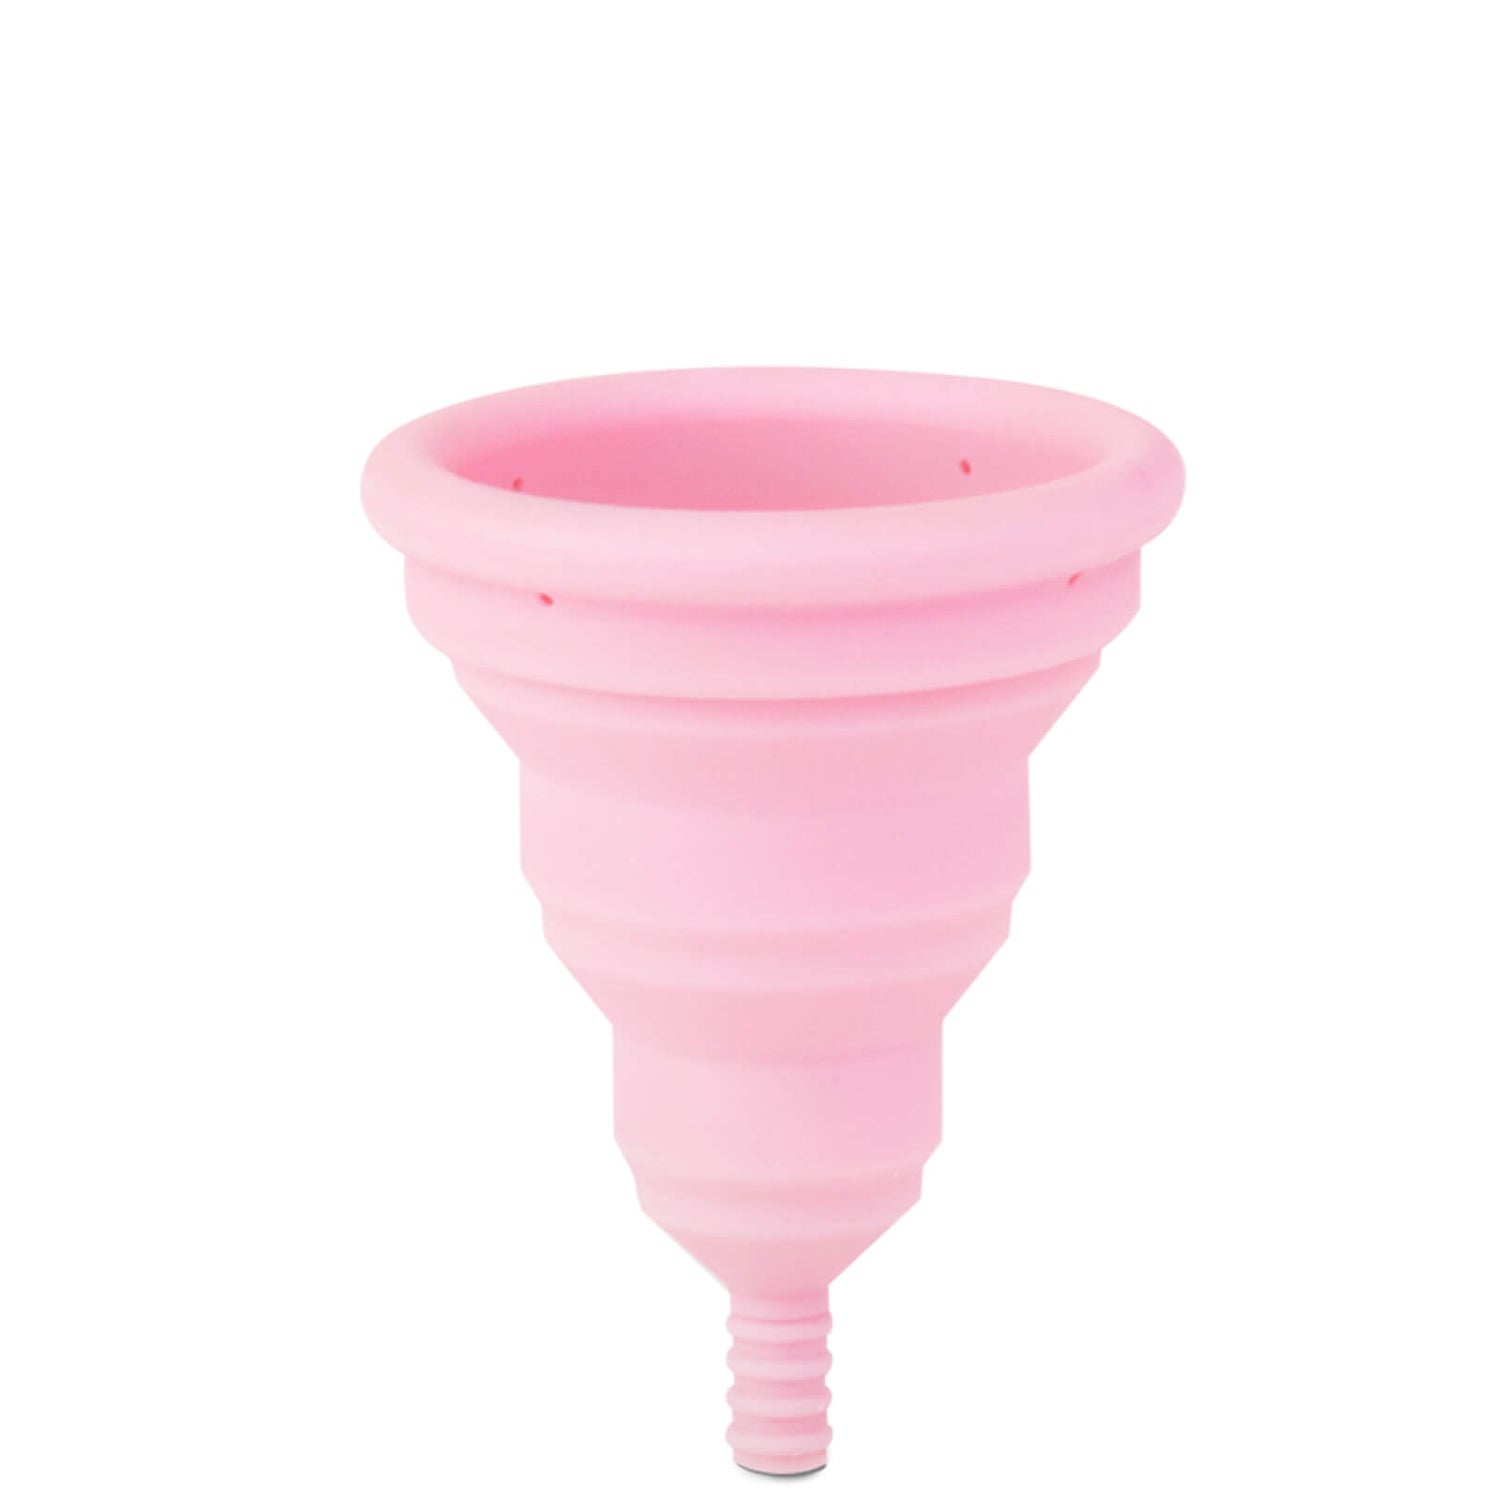 Менструальная чаша Intimina Lily Cup Compact A